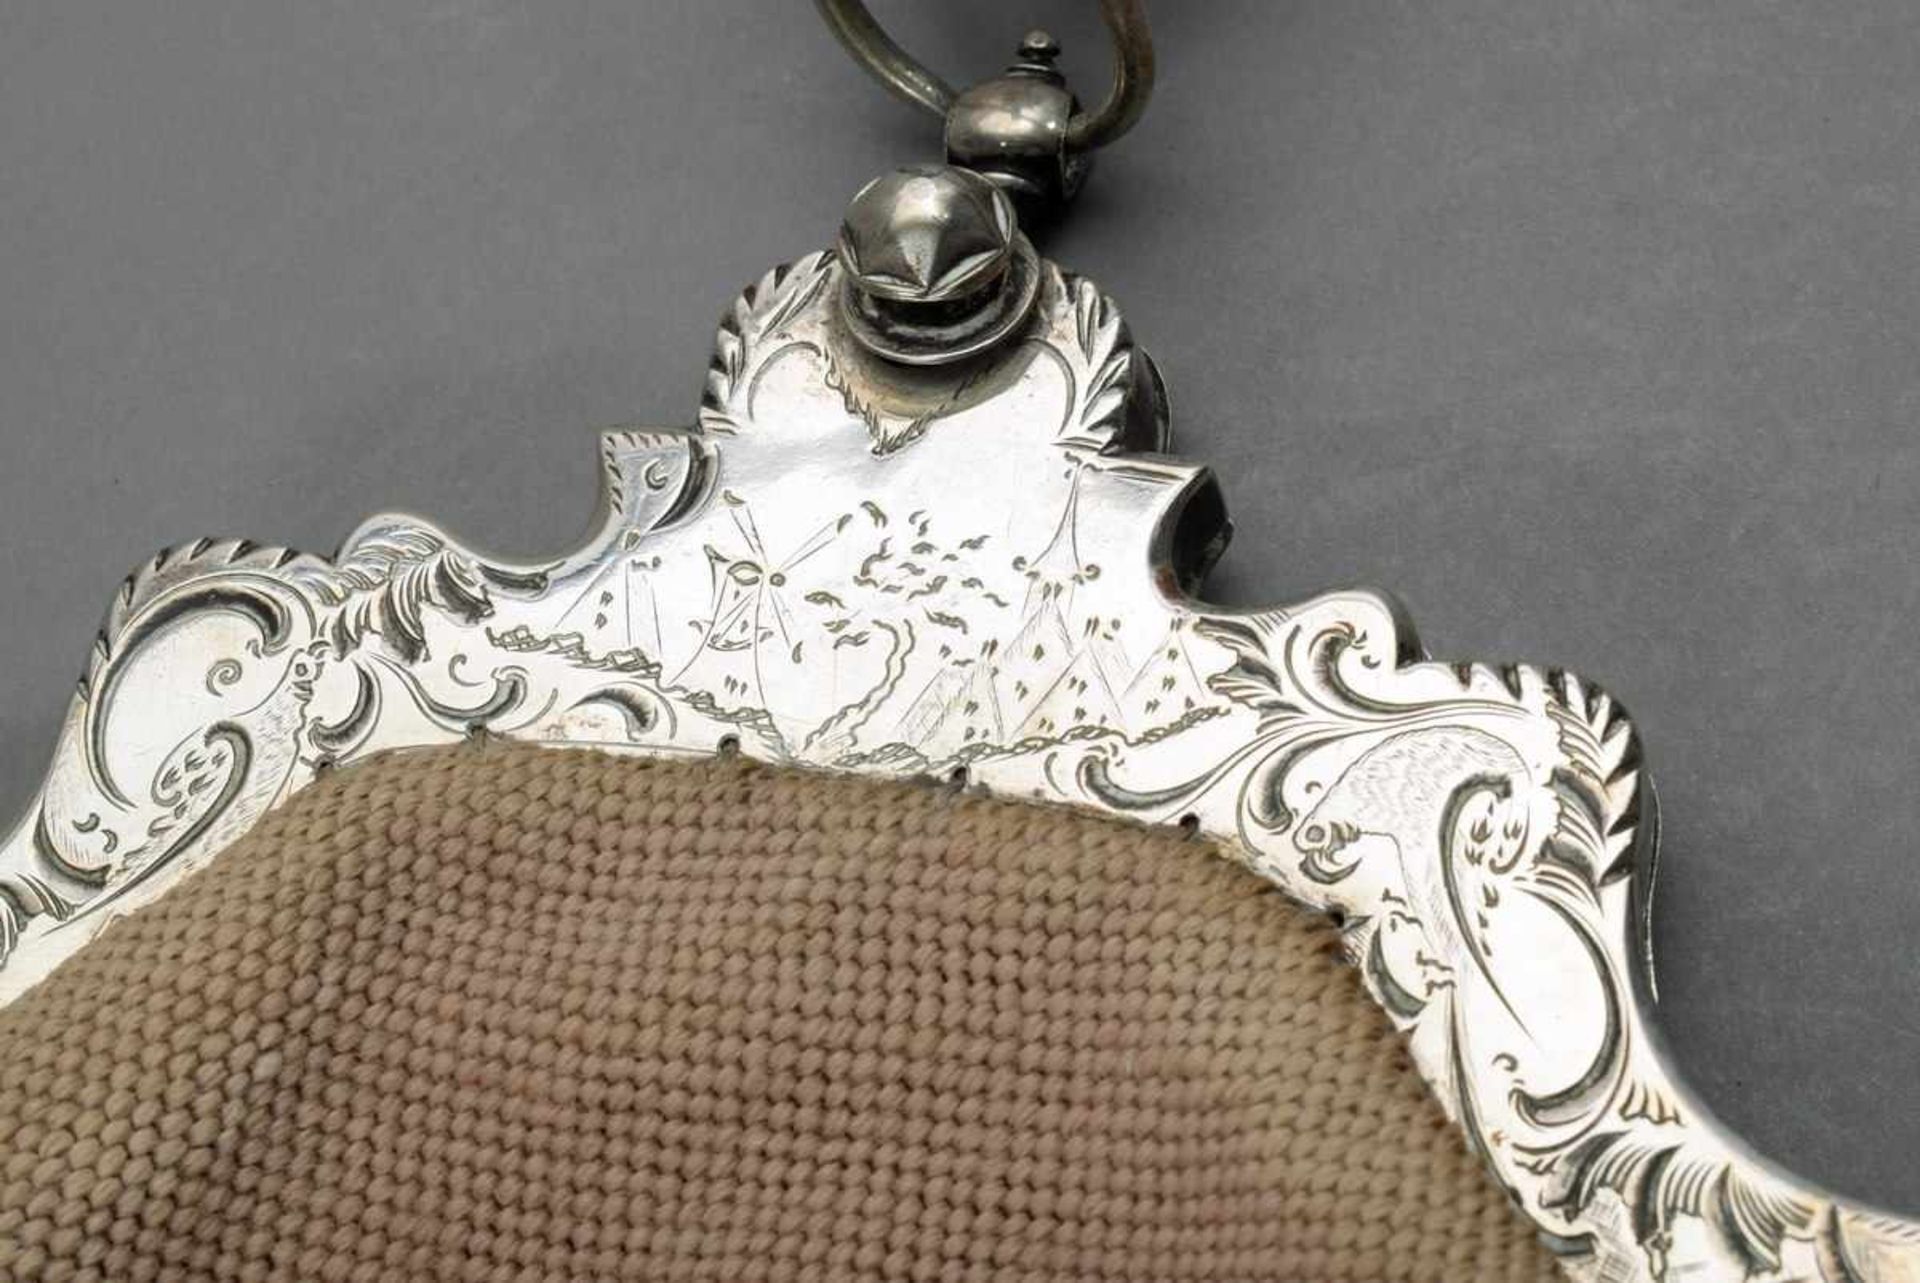 Holländische Trachtentasche mit fein graviertem Silber 833 Bügel "Windmühlen", 1. Hälfte 19.Jh., - Bild 4 aus 4